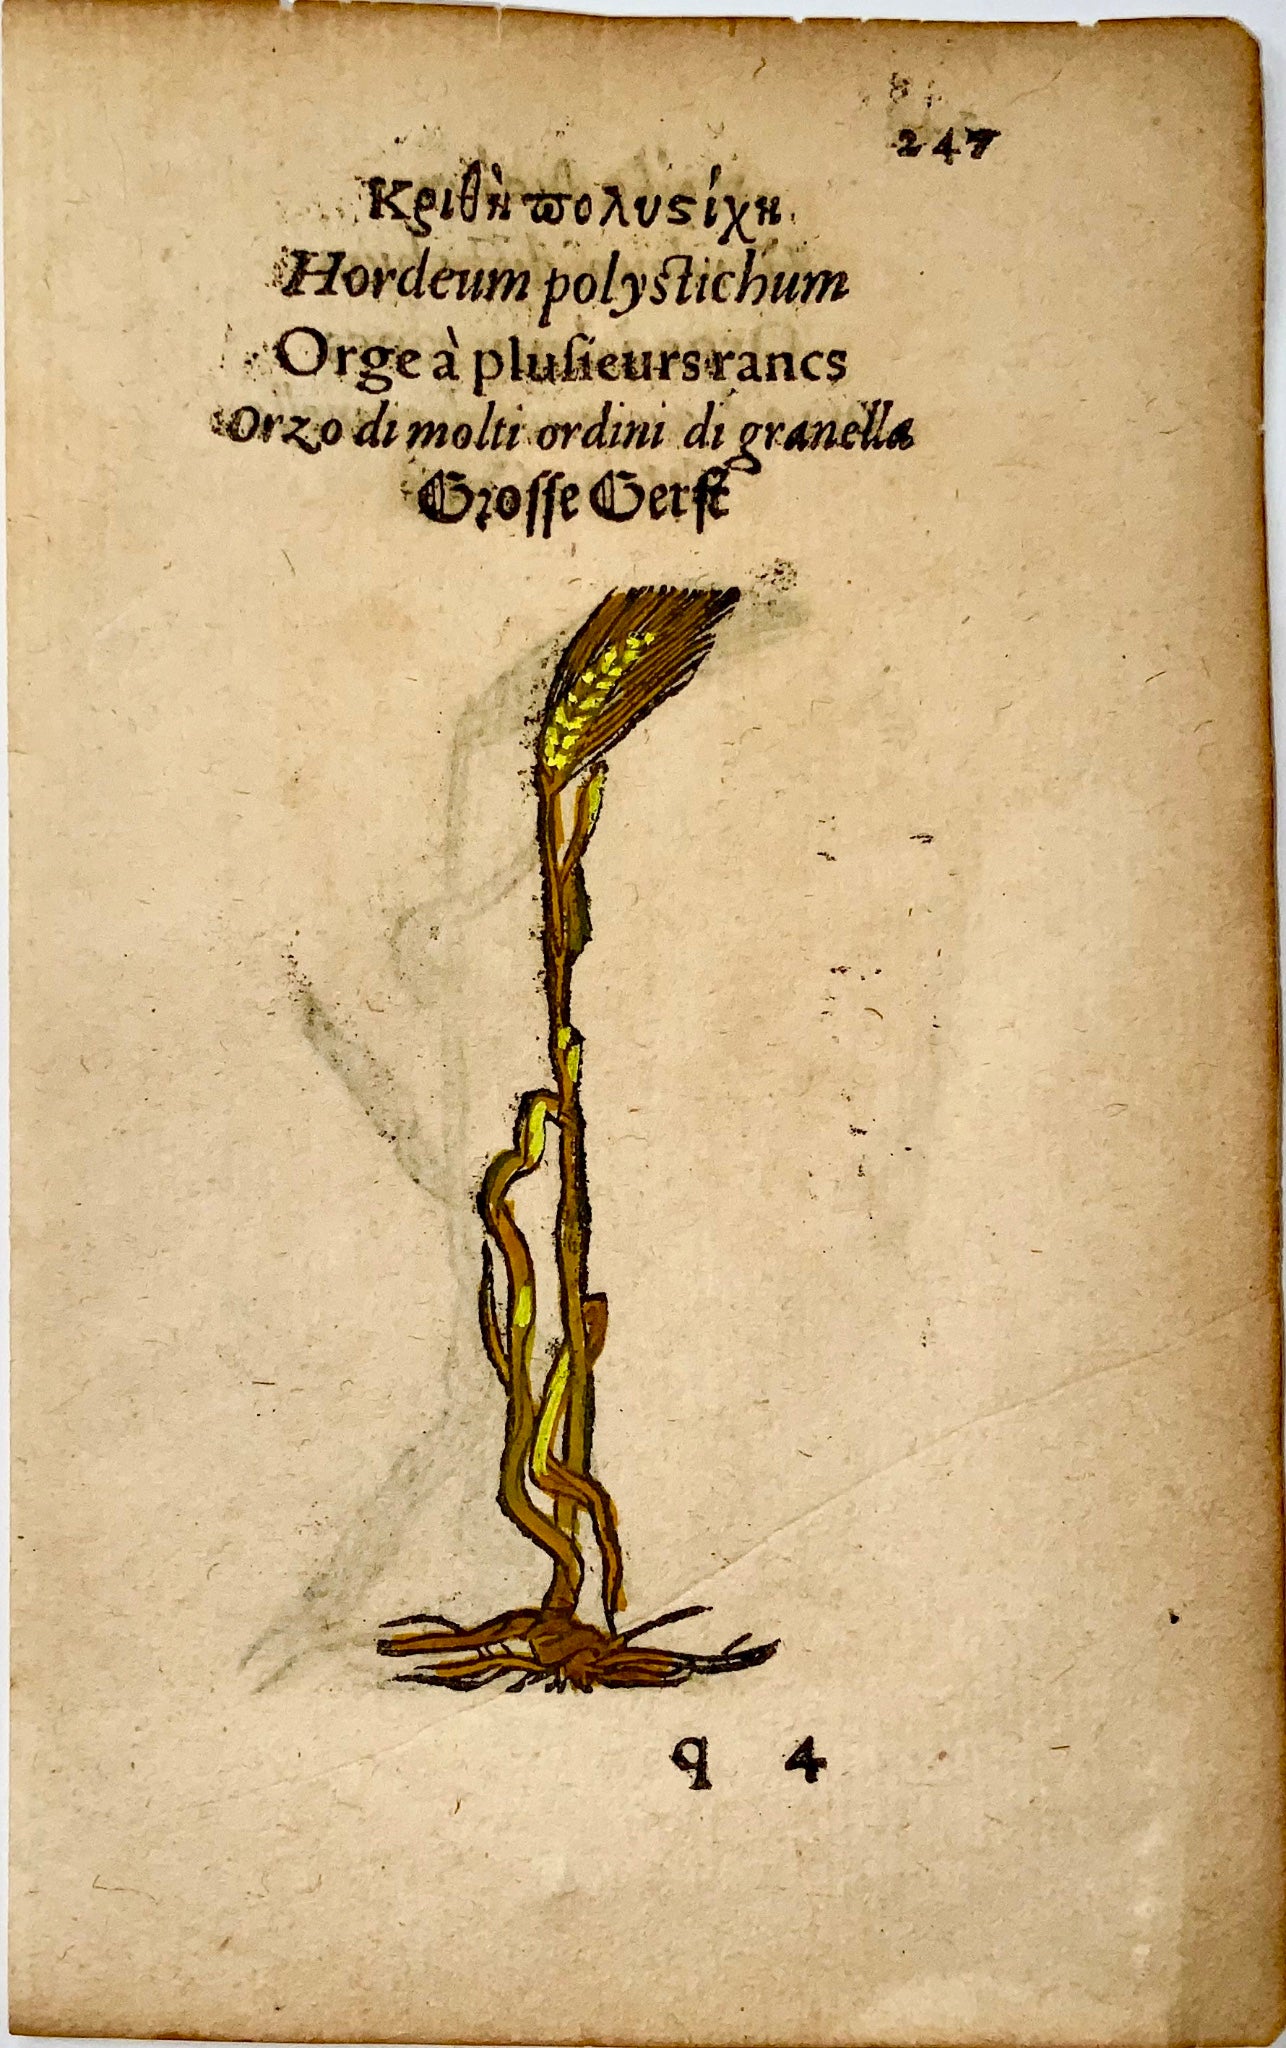 1551 Orge, Leonhard Fuchs, 2 gravures sur bois, couleur manuelle, grain, botanique